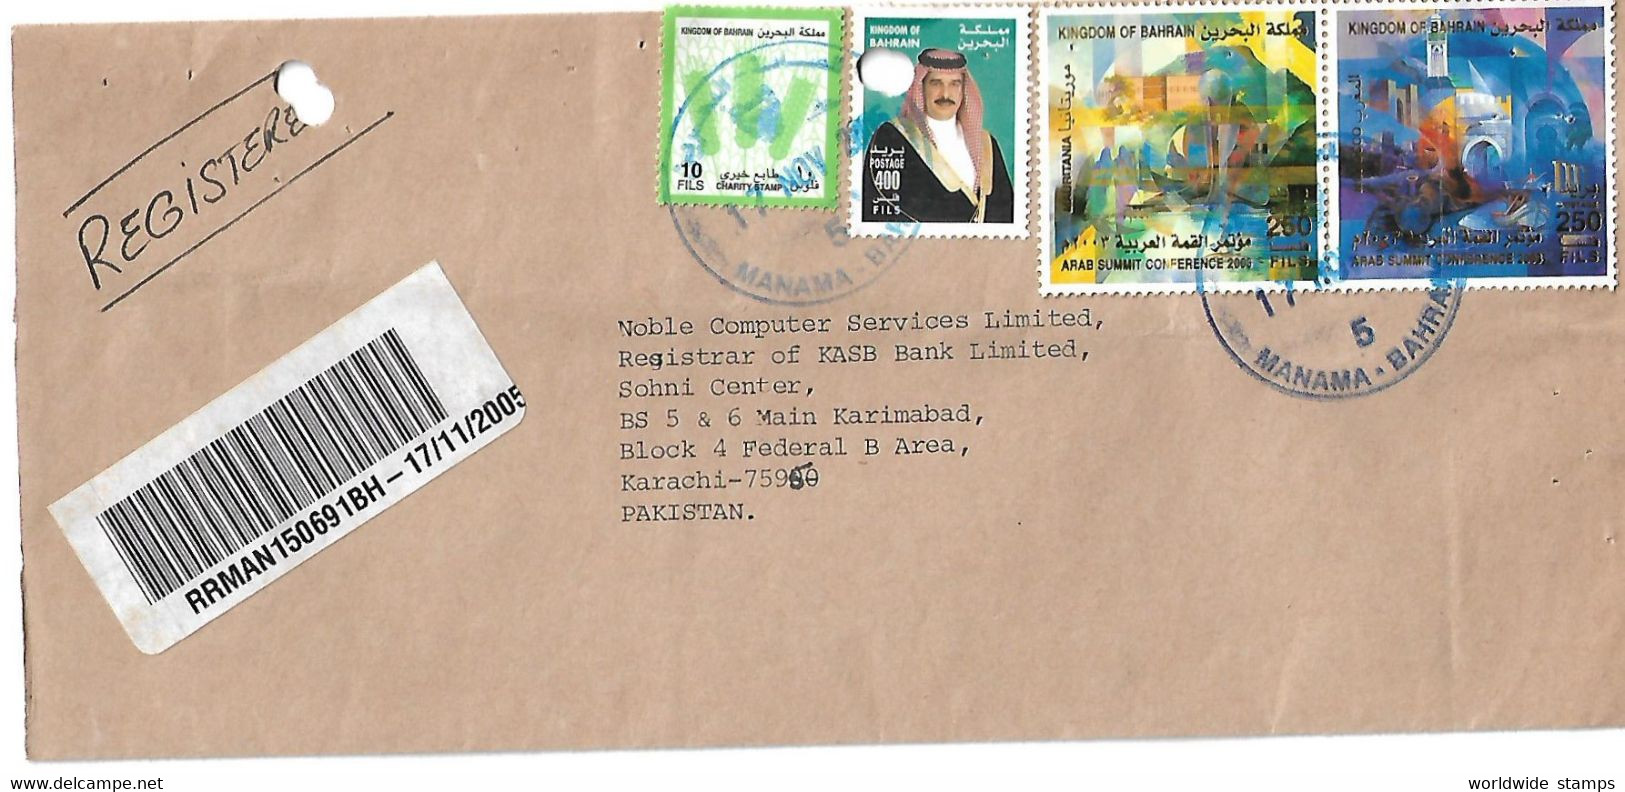 Bahrain Registered Airmail 2002 Shaikh Hamad Bin Isa Al Khalifa 400f, 2003 ARAB SUMMIT CONFERENCE Charity Stamp - Bahrain (1965-...)